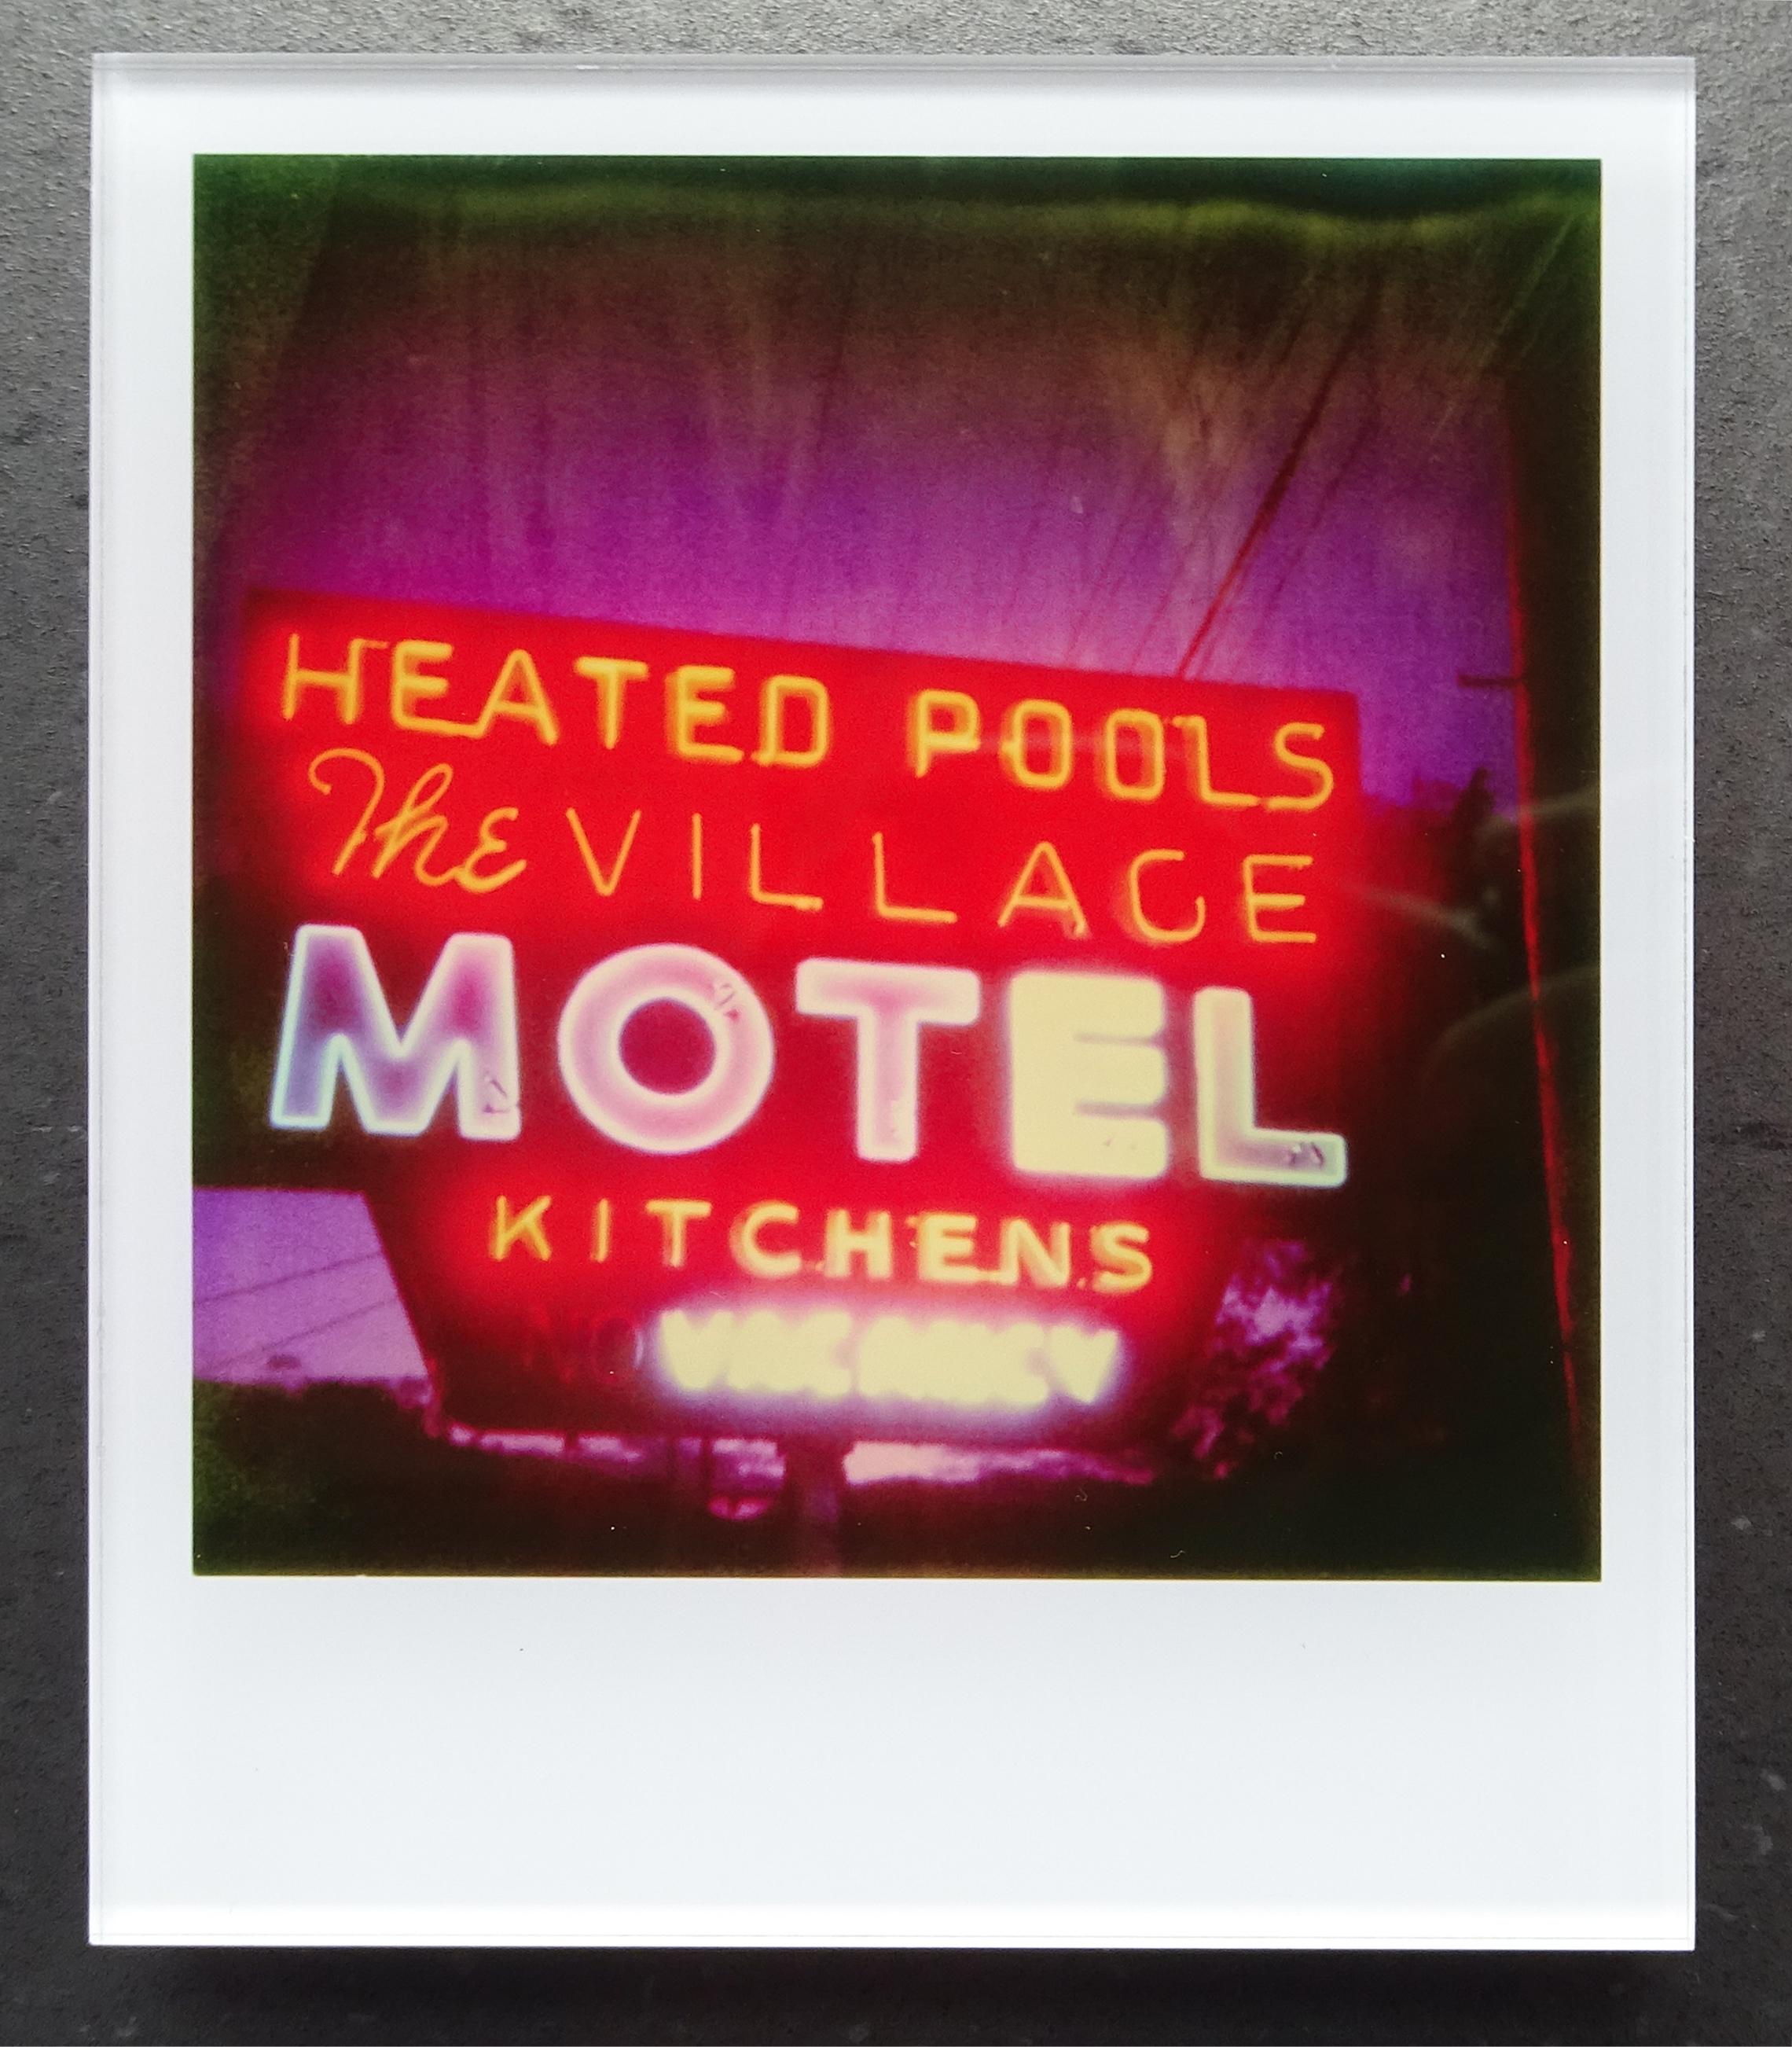 Die Minis von Stefanie Schneider
Village Motel Beheizter Pool (The last Picture Show), 2009

Verso signiert und Signaturmarke.
Digitale Lambda-Farbfotografien auf Basis der Polaroid.
Eingeklemmt zwischen Plexiglas (Dicke 0,7 cm)

Offene Editionen in